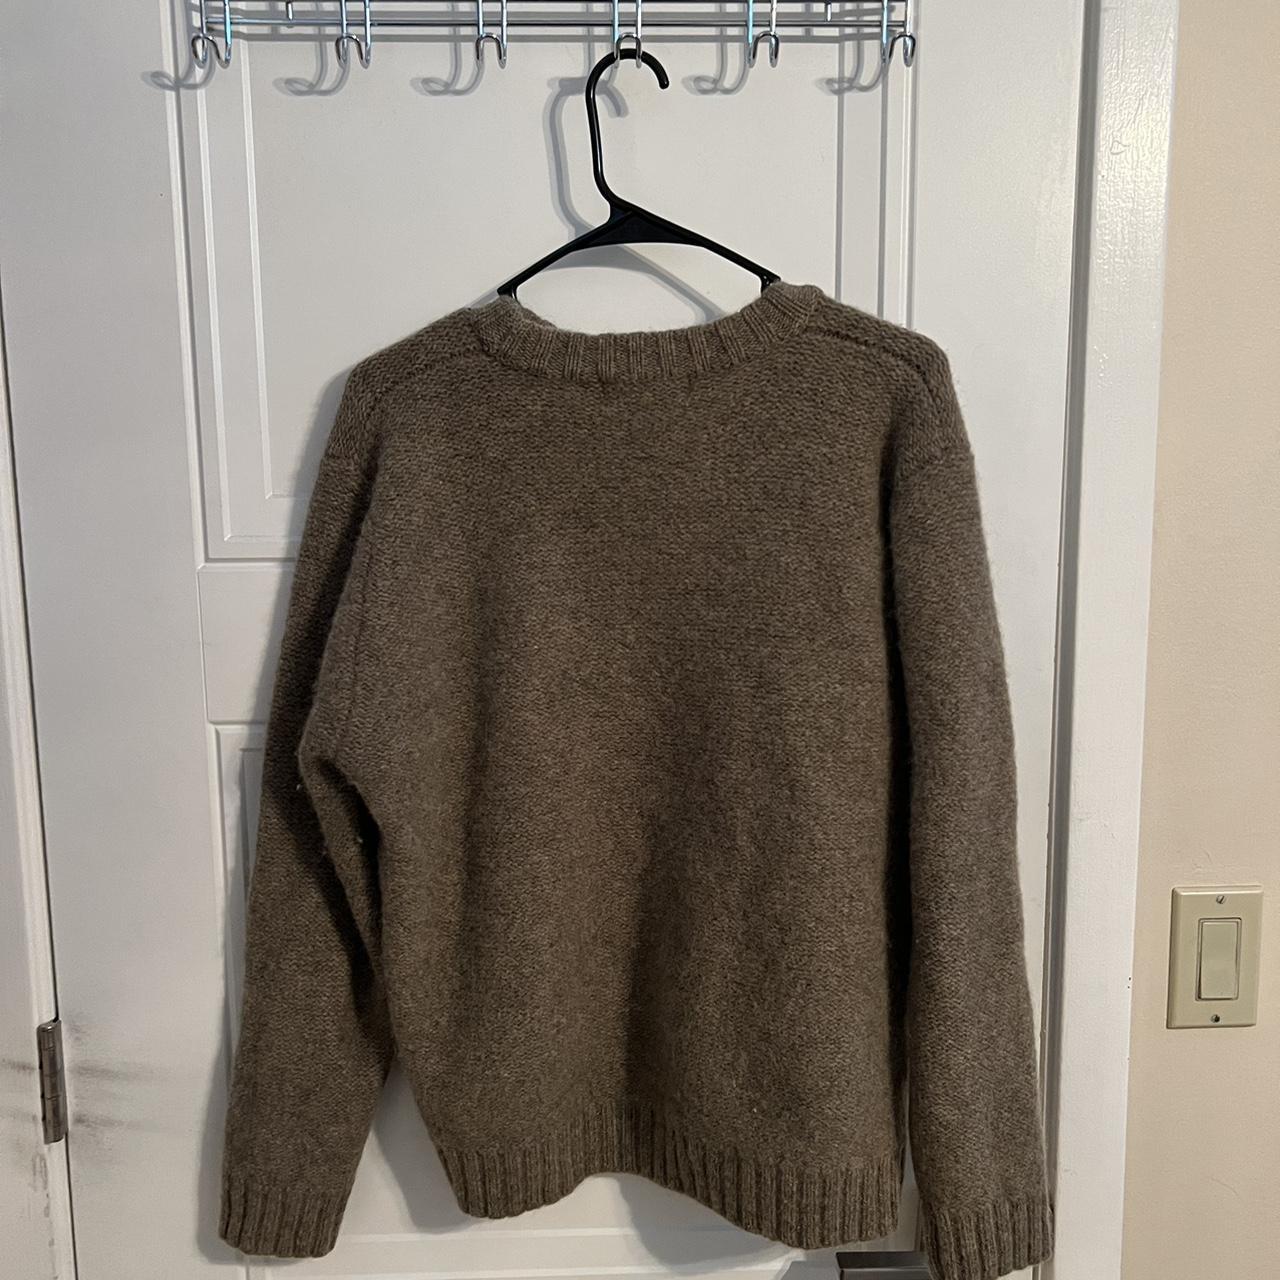 Heather Tweed Brown Sweater Quality... - Depop